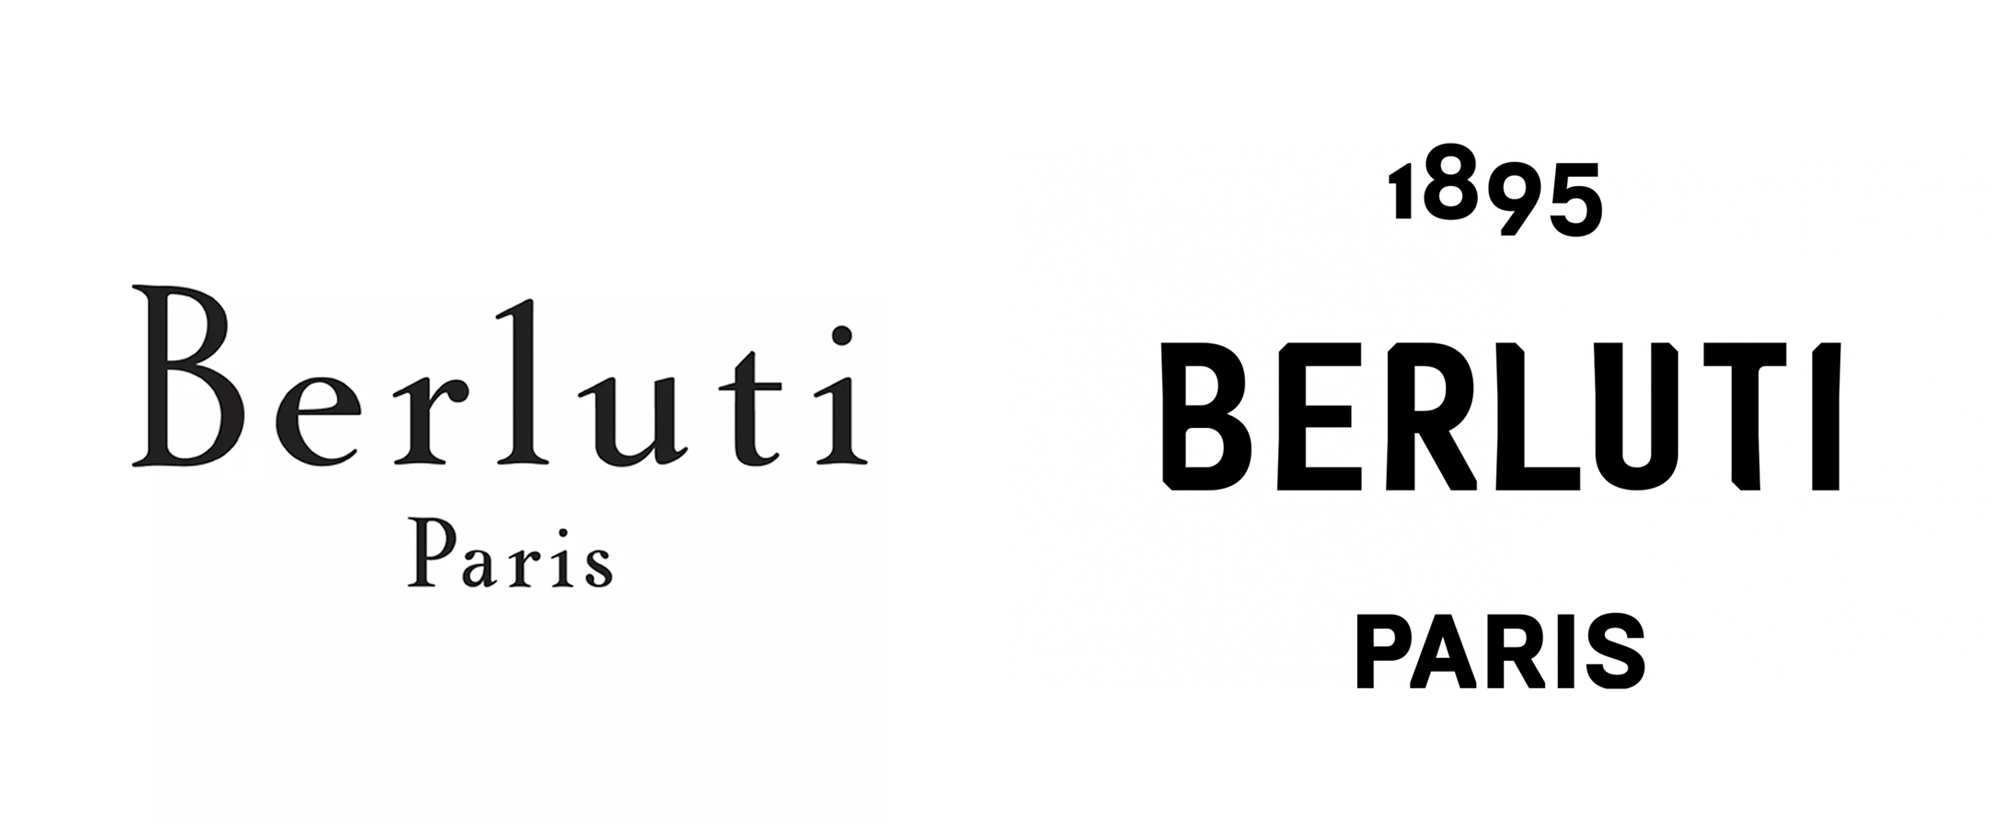 Berluti(ベルルッティ)は海外通販で財布や靴がセールより安くなる